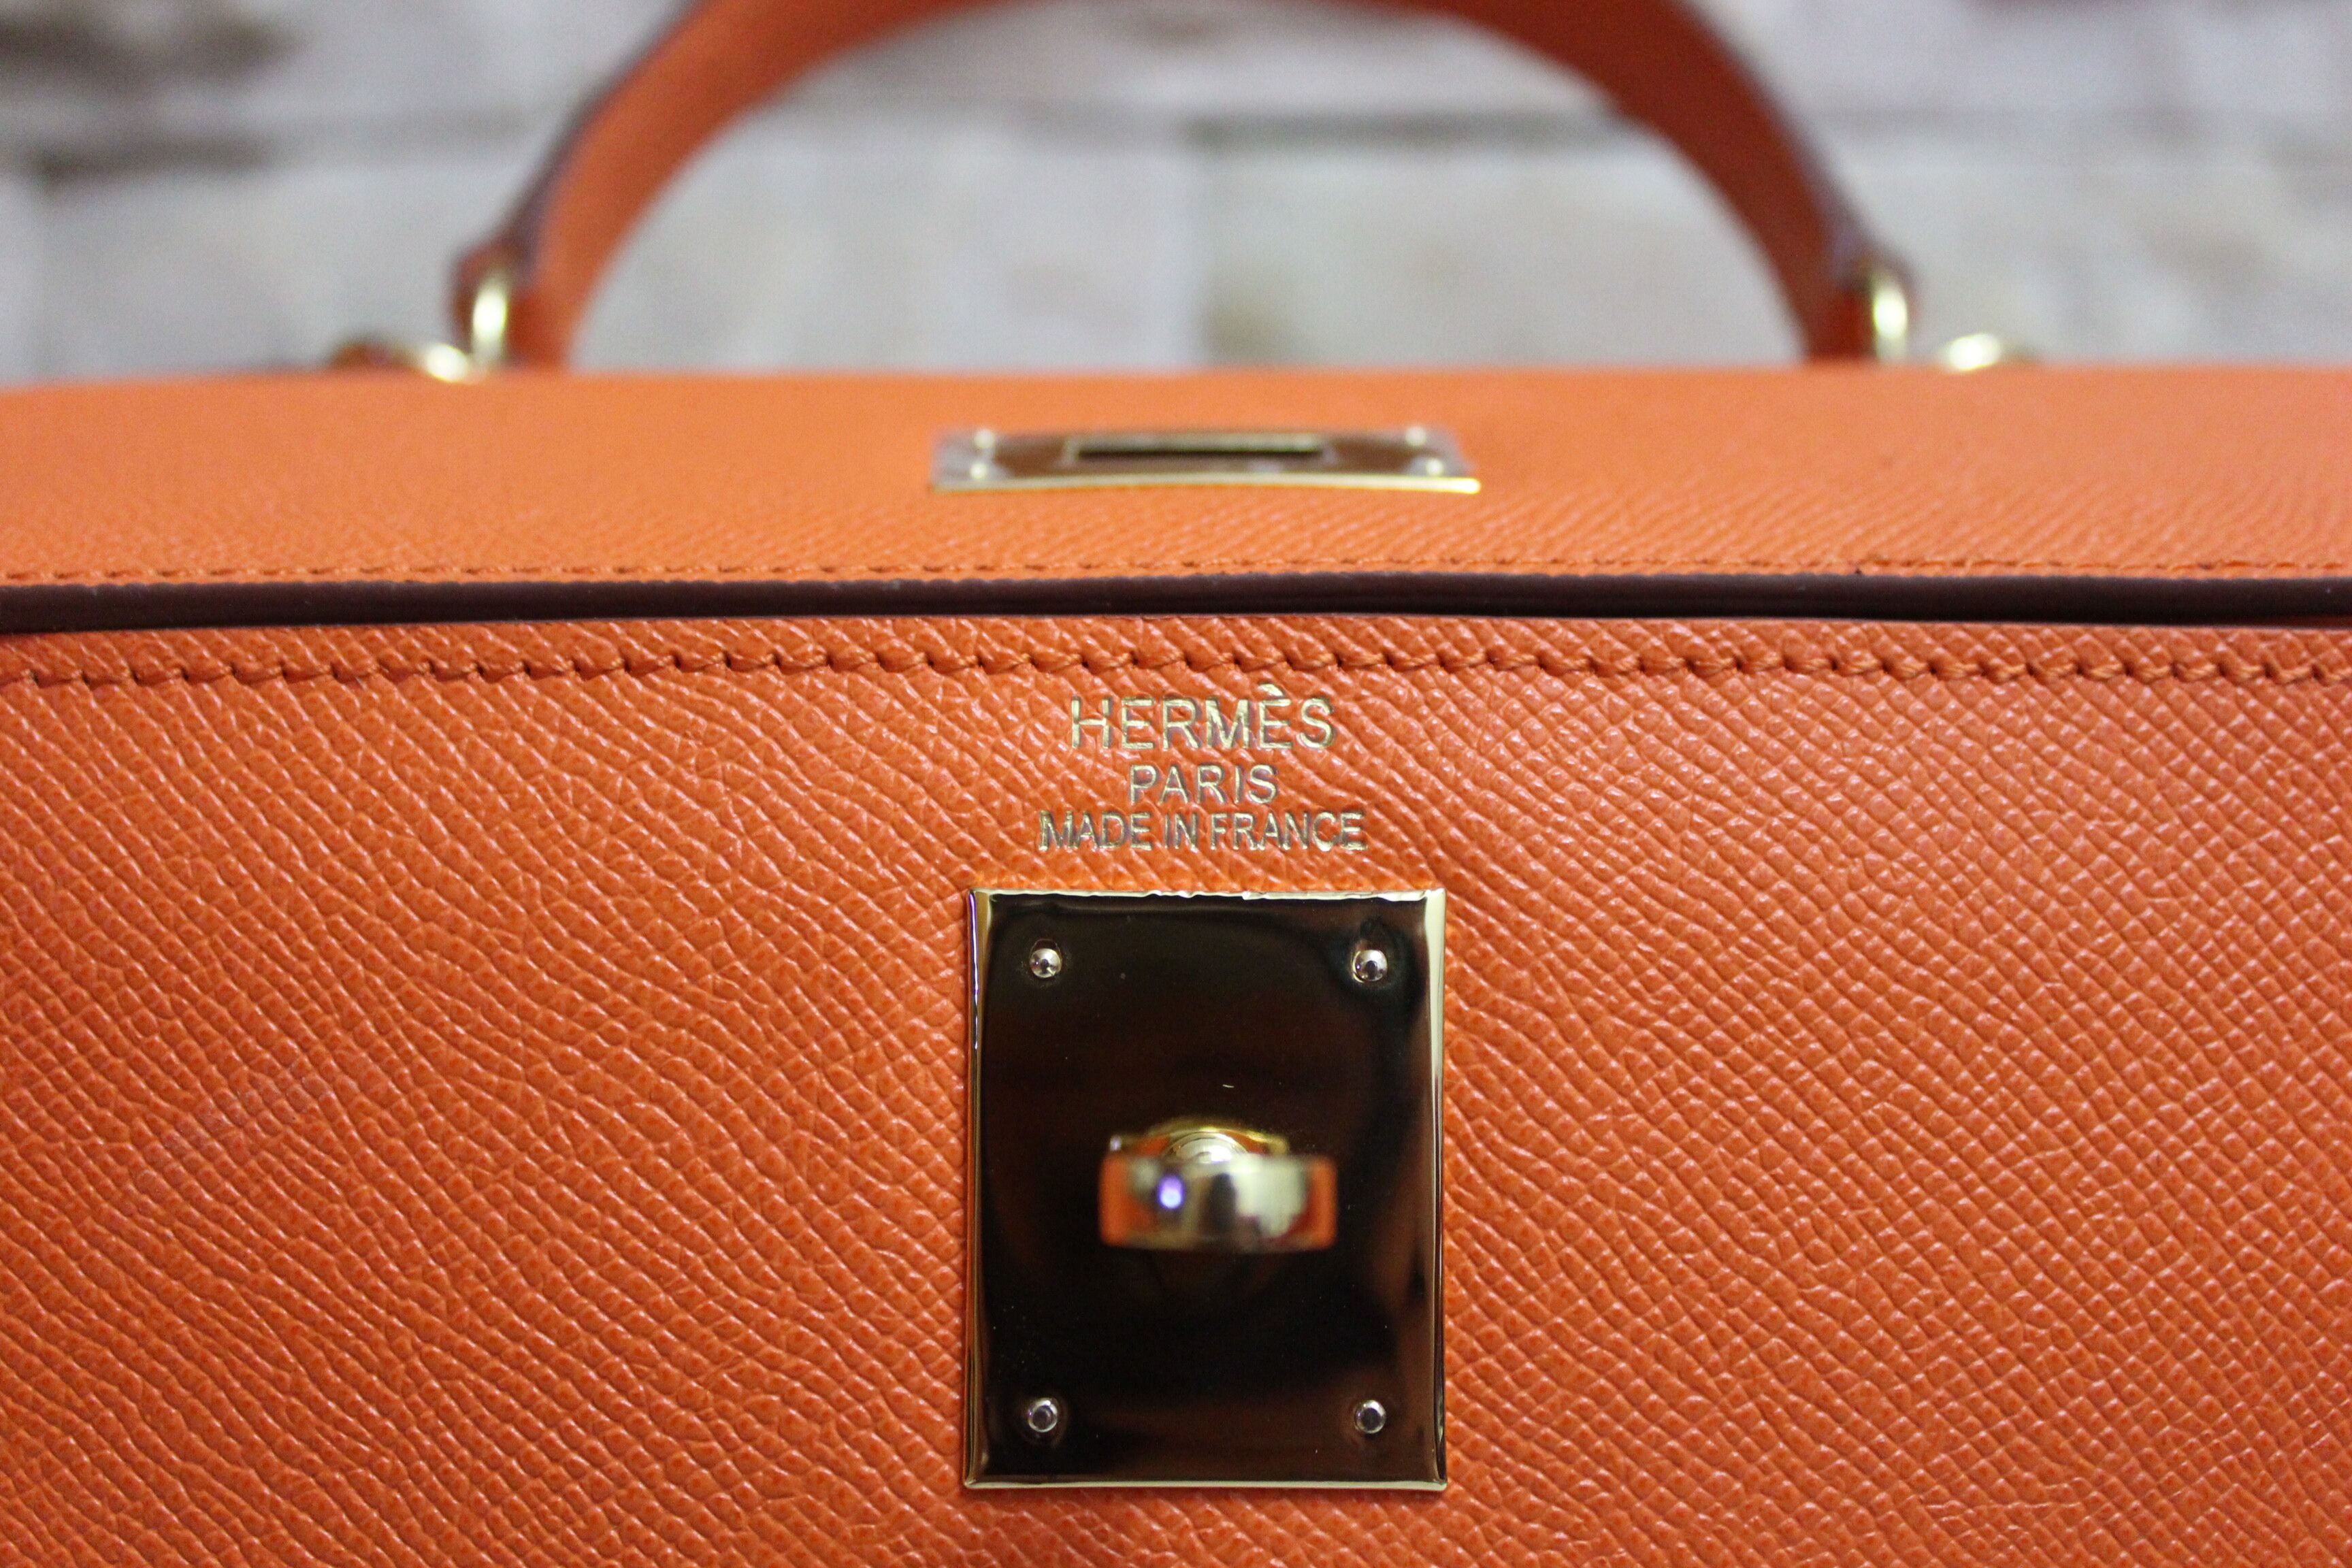 Hermes Kelly 28cm Shoulder Bags espom leather orange